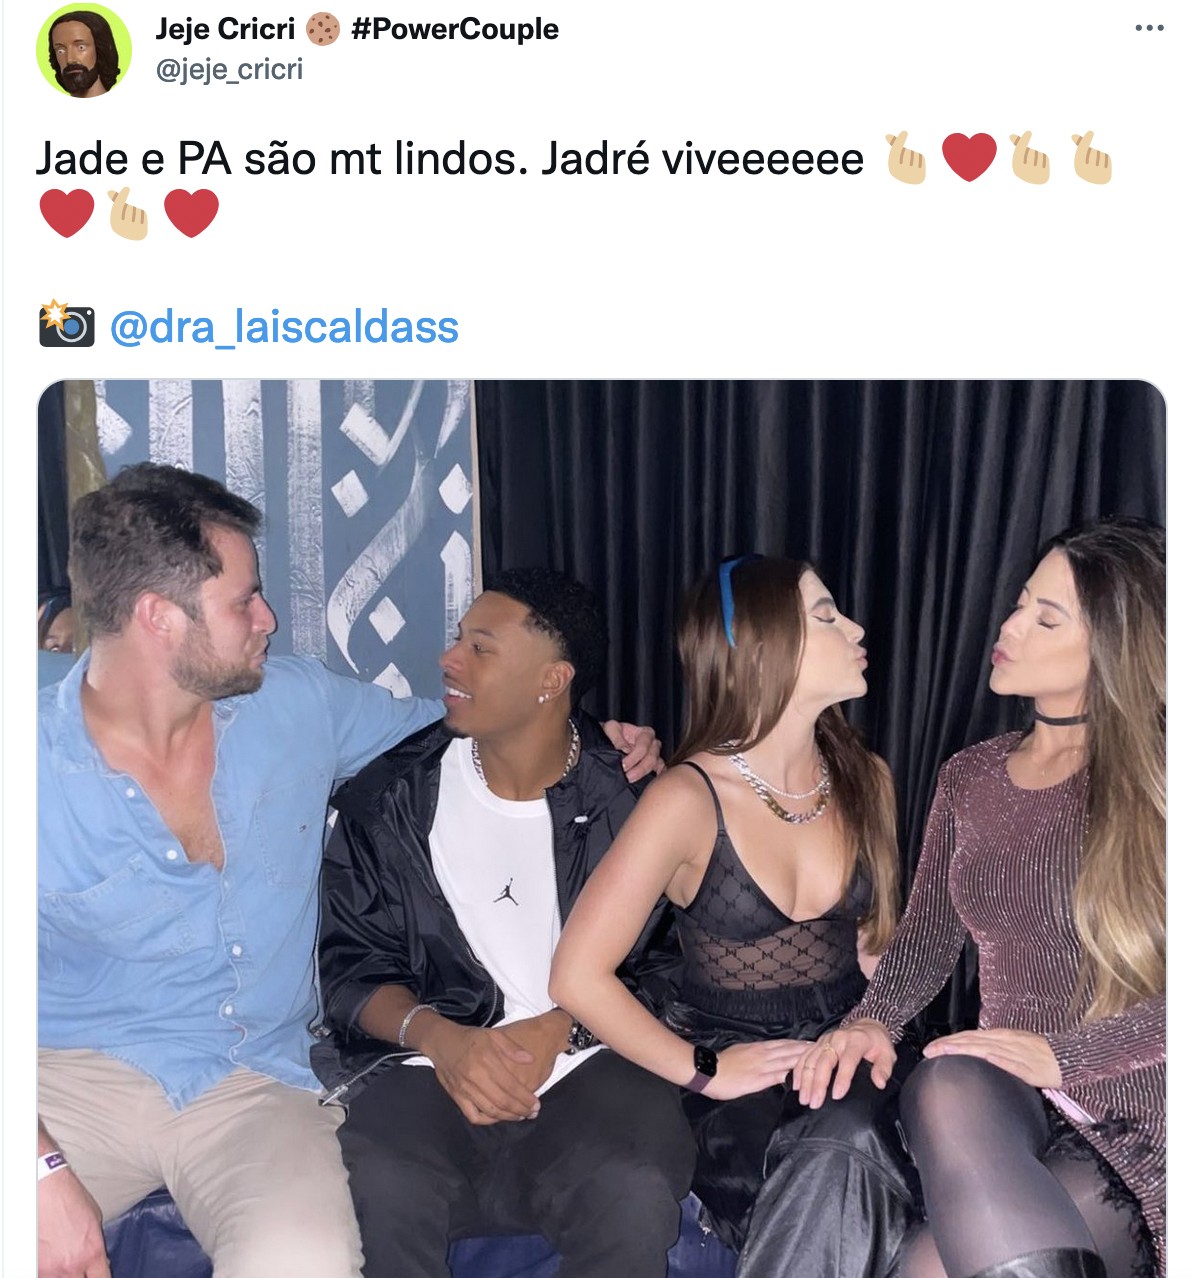 Fãs se alvoroçam com encontro de Jade Picon e PA (Foto: Reprodução / Twitter)